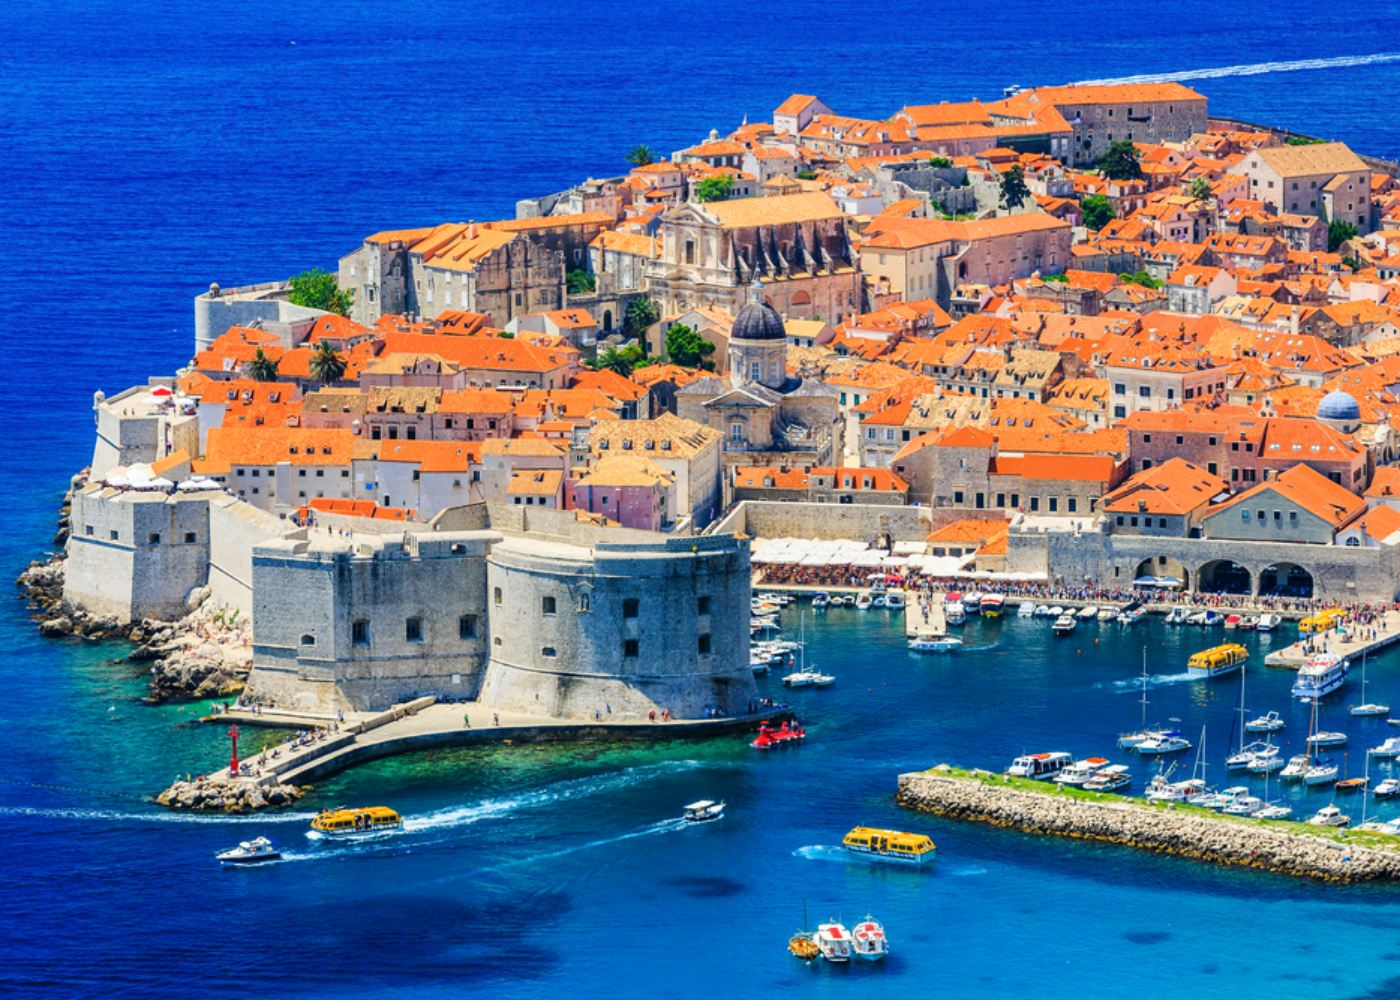 La conferencia - La RepÃºblica olvidada: La PolÃ­tica y EconomÃ­a en la Ã©poca temprana del Dubrovnik (Ragusa) moderno